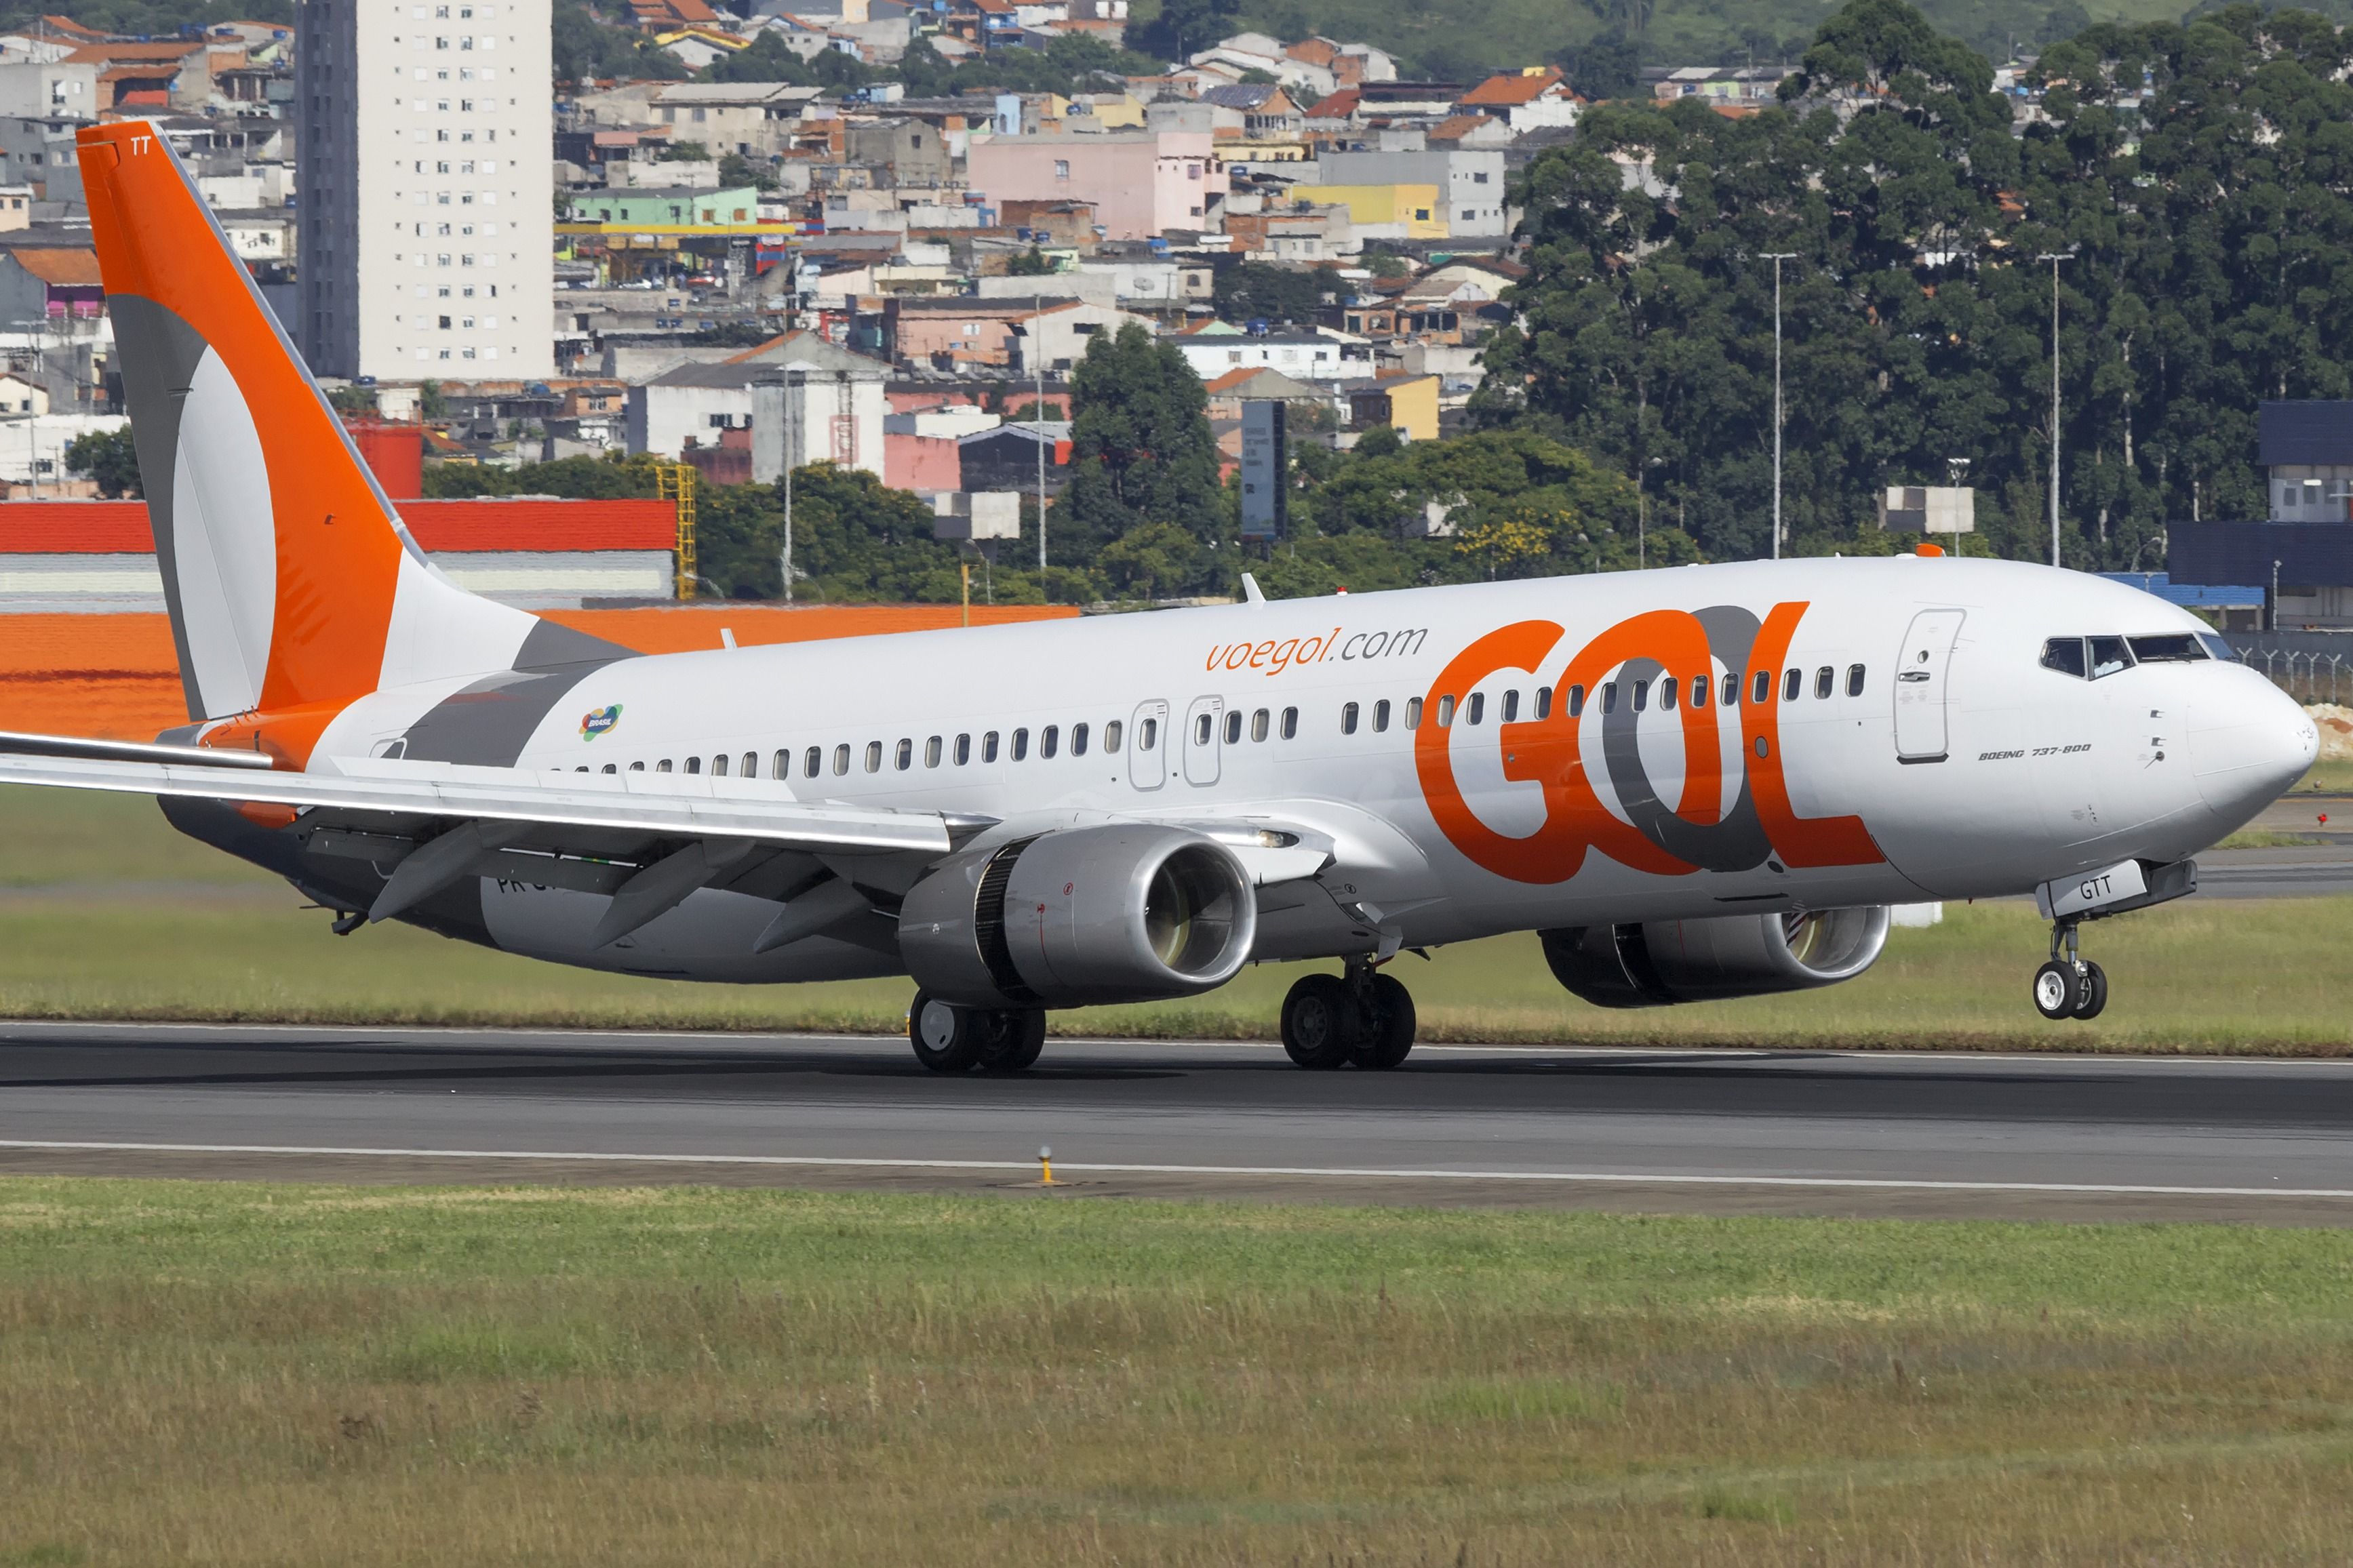 Boeing 737-800 of GOL Linhas Aereas at GRU Airport.